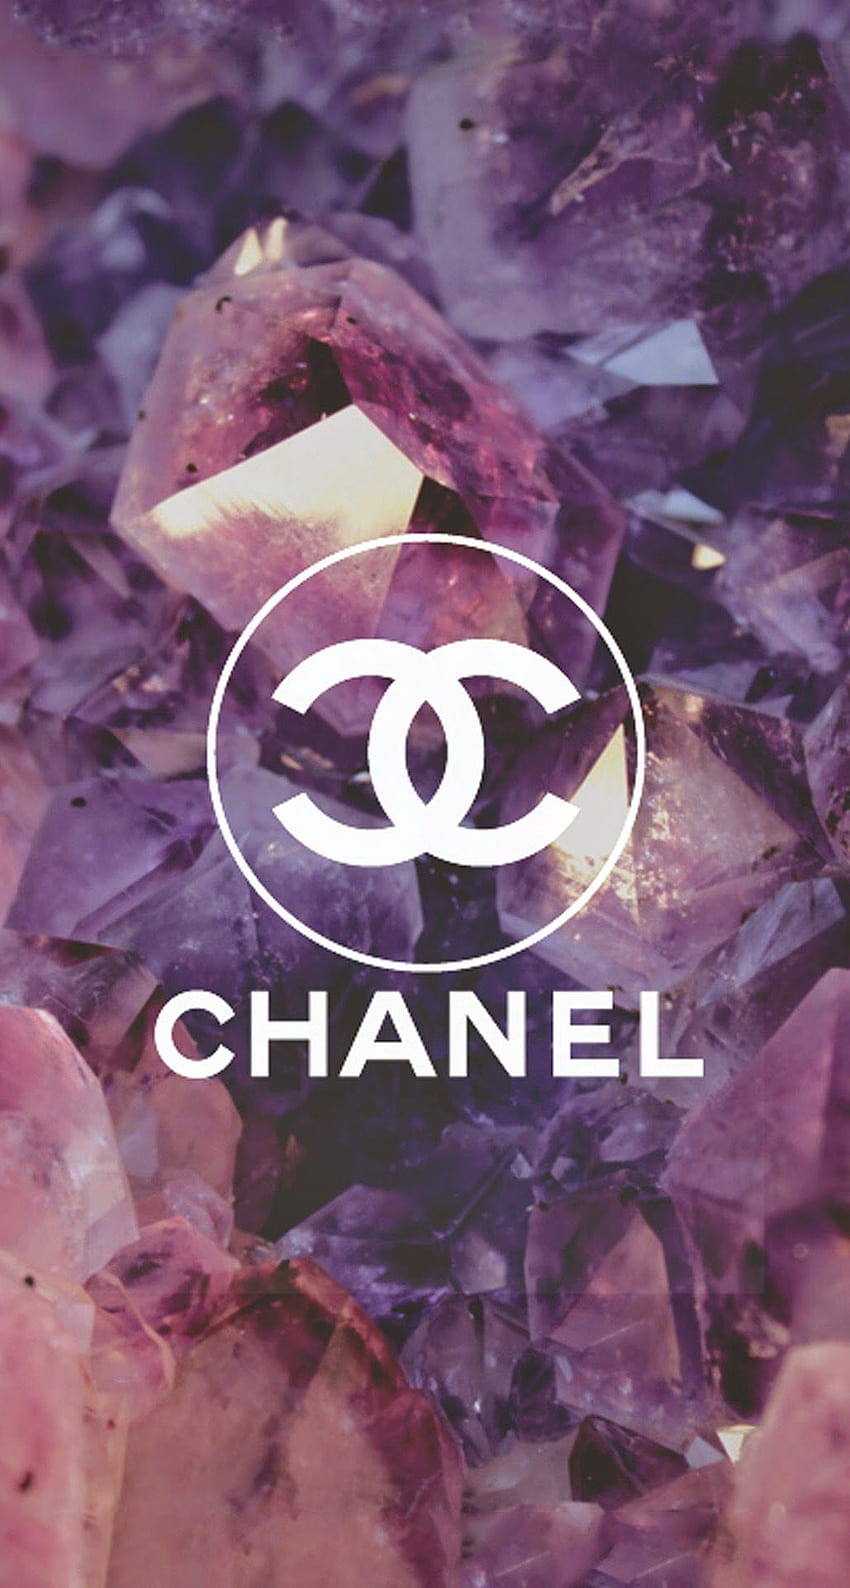 Một logo Coco Chanel với những viên kim cương rực rỡ sẽ khiến bạn không thể rời mắt khi nhìn vào. Dành cho những ai yêu thích sự sang trọng và quý phái, hãy truy cập ngay để khám phá nét đẹp hoàn hảo của thương hiệu này. 